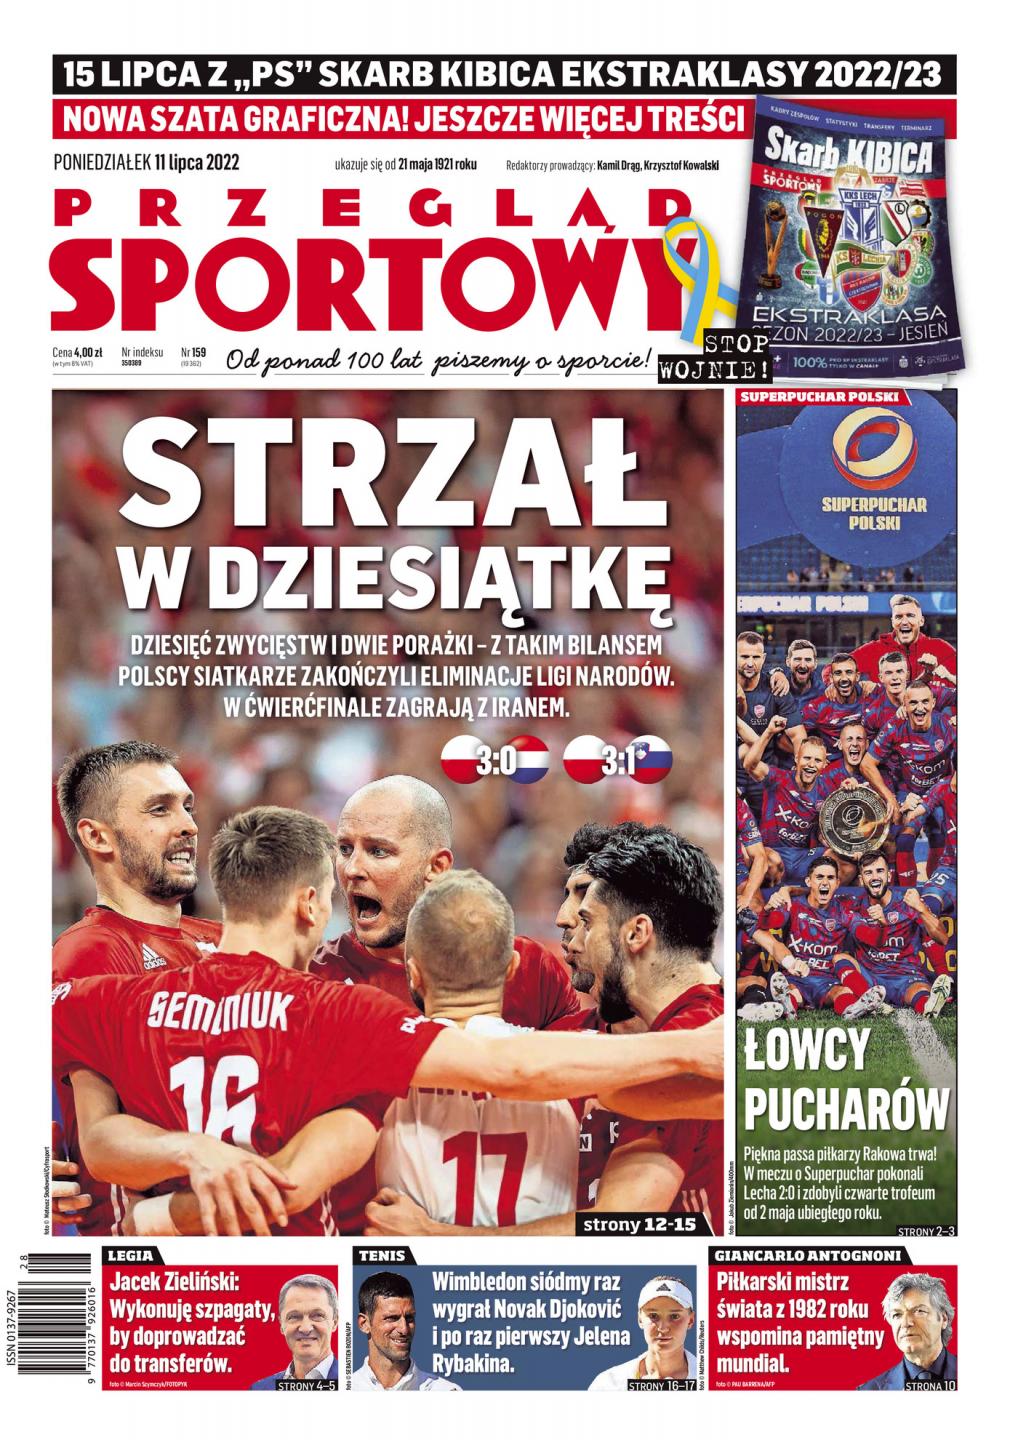 Okładka Przegląd Sportowy po meczu Lech Poznań - Raków Częstochowa 0:2 (09.07.2022)